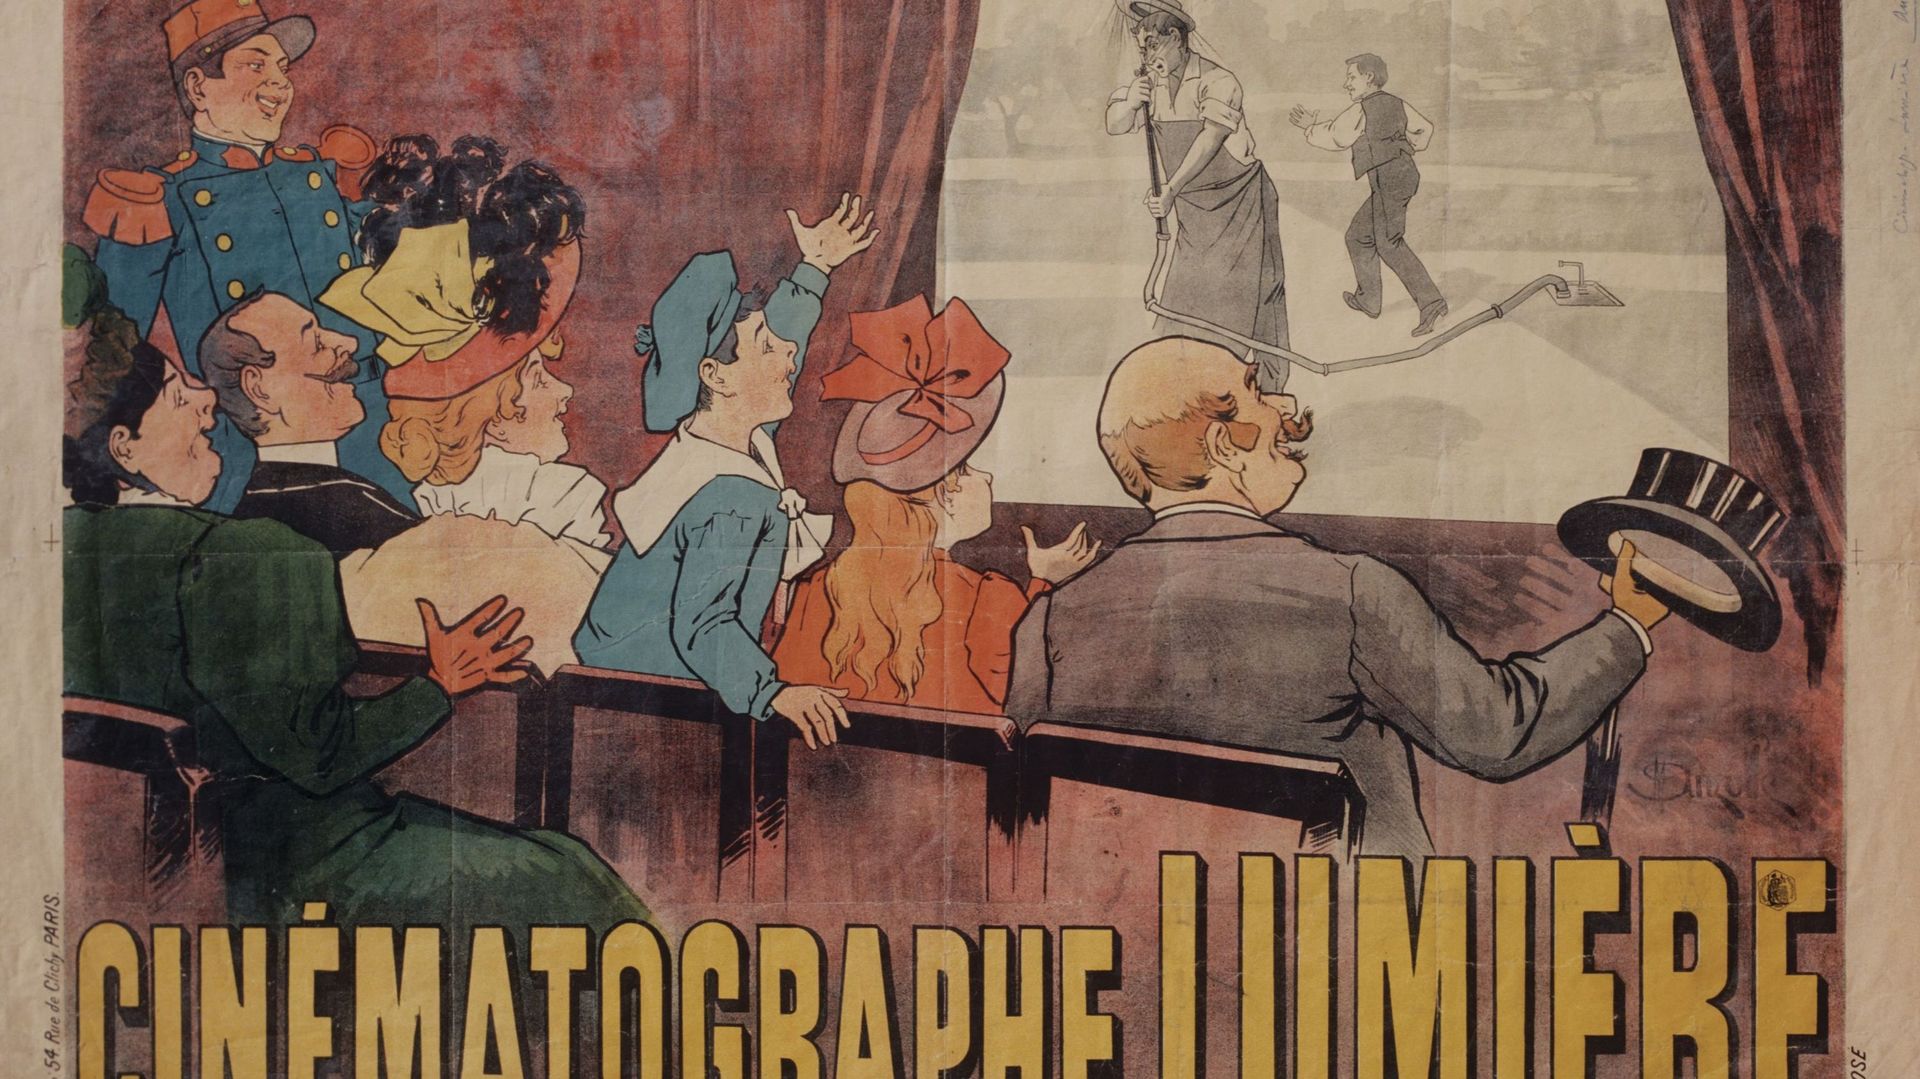 Affiche pour le cinématographe Lumière, 1896